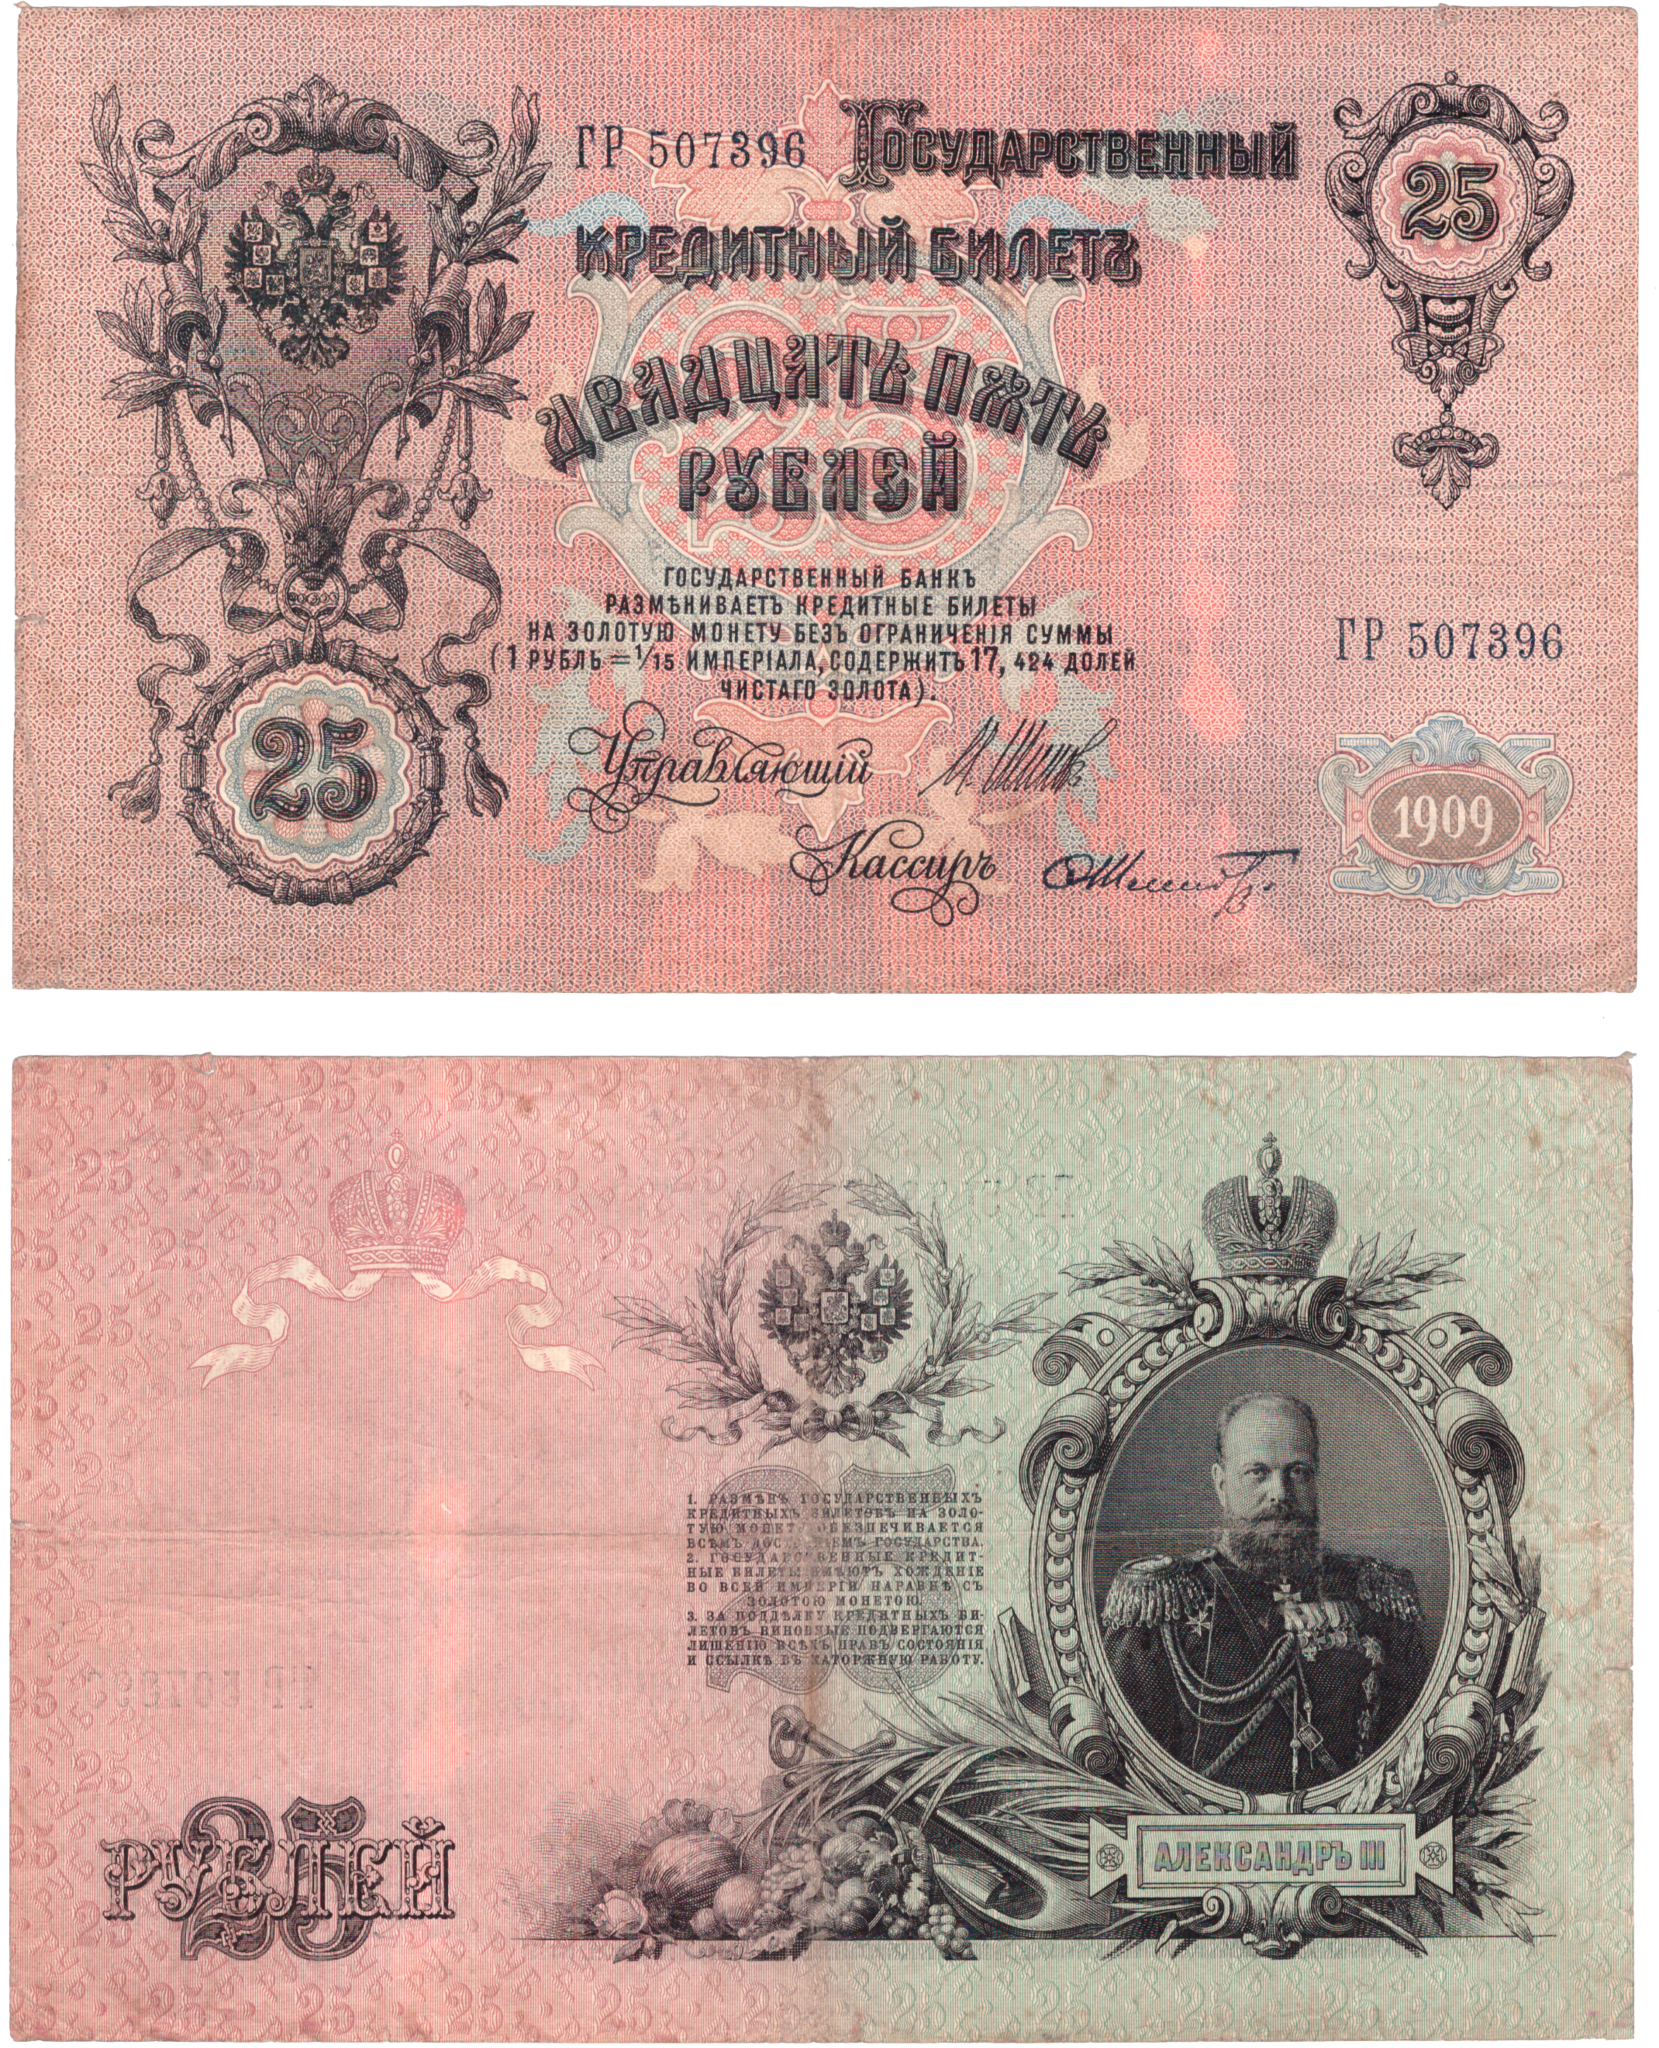 5 рублей 1909 года. 25 Рублей Российской империи. Царские ассигнации 1890-1917. Царские ассигнации 1909 года.